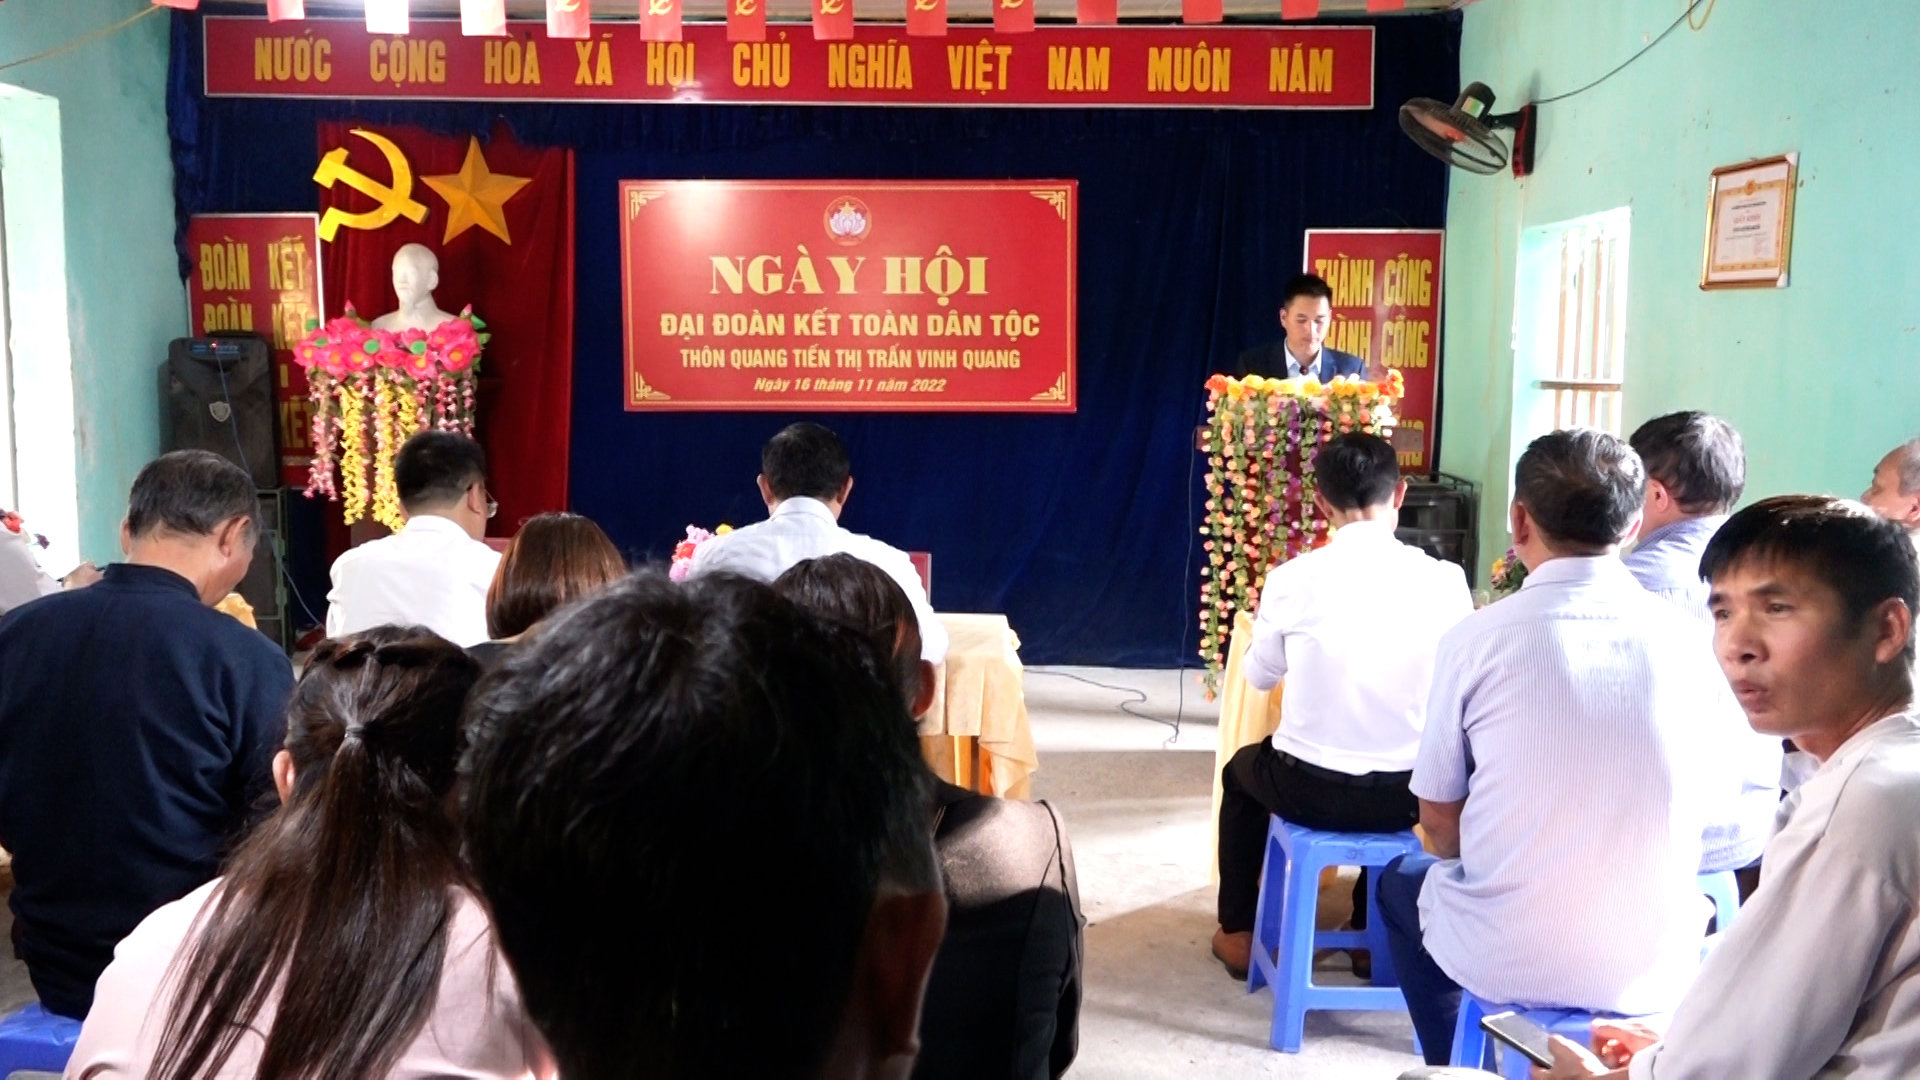 Ngày hội Đại đoàn kết toàn dân tộc thôn Quang Tiến thị trấn Vinh Quang